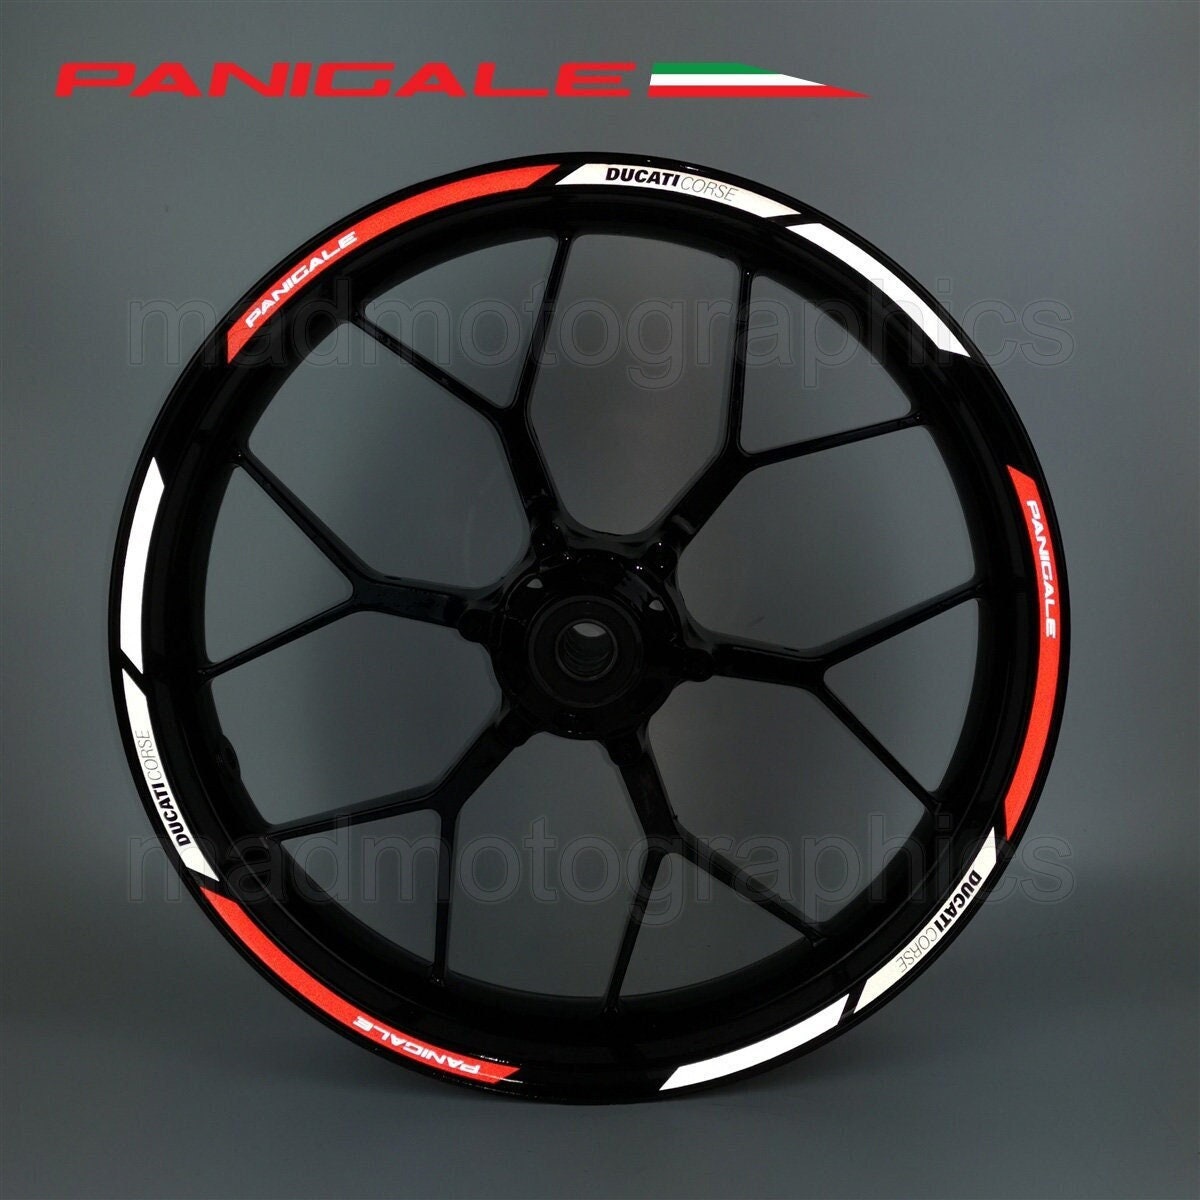 Ducati wheel sticker - .de